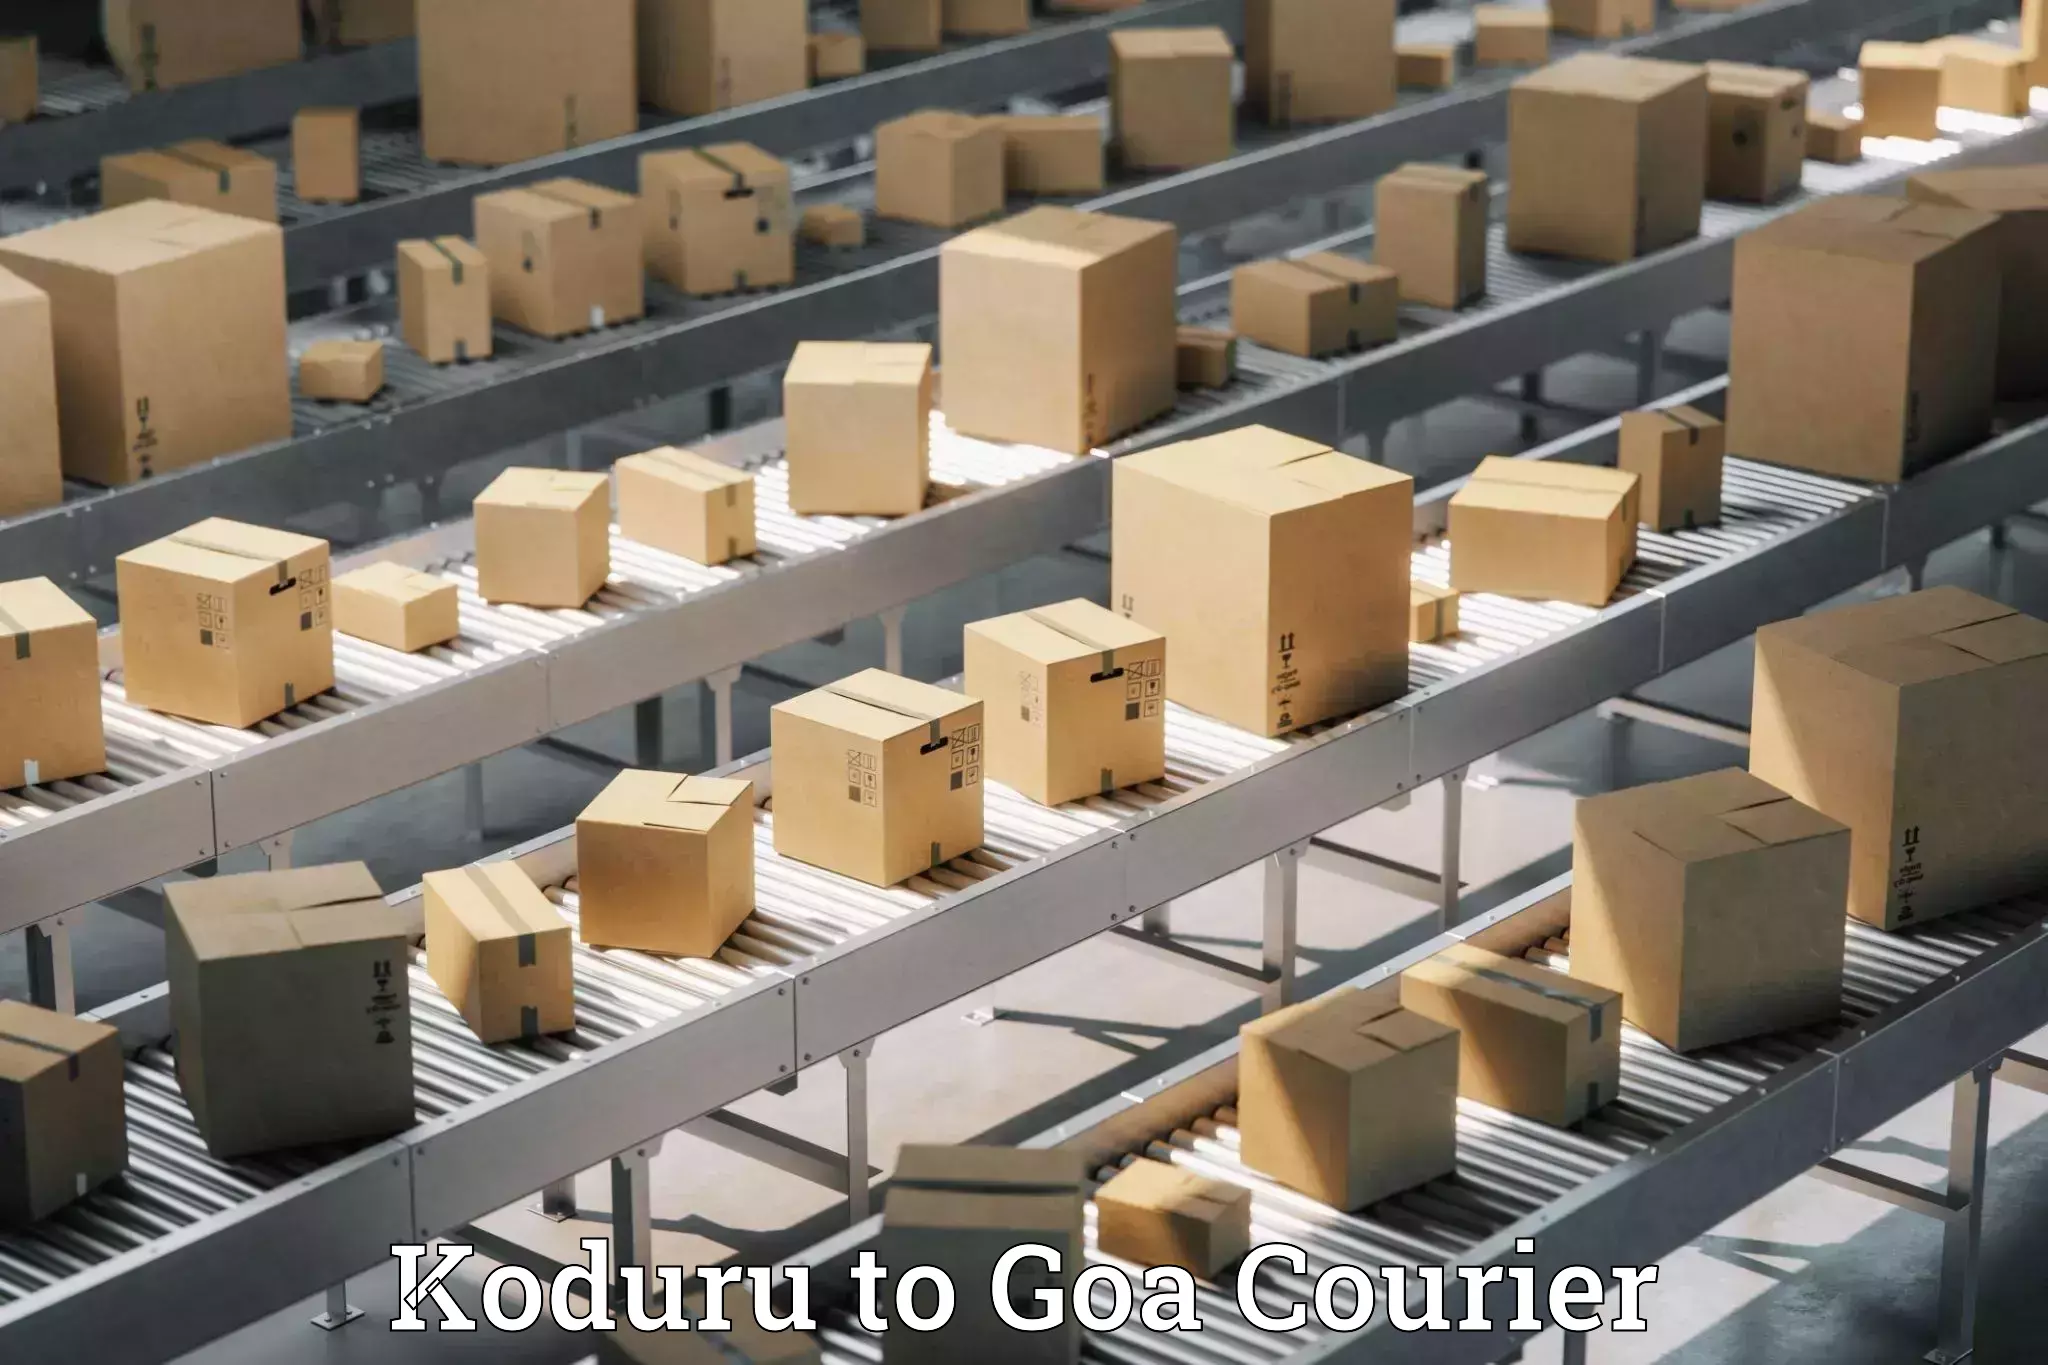 User-friendly courier app Koduru to Bardez